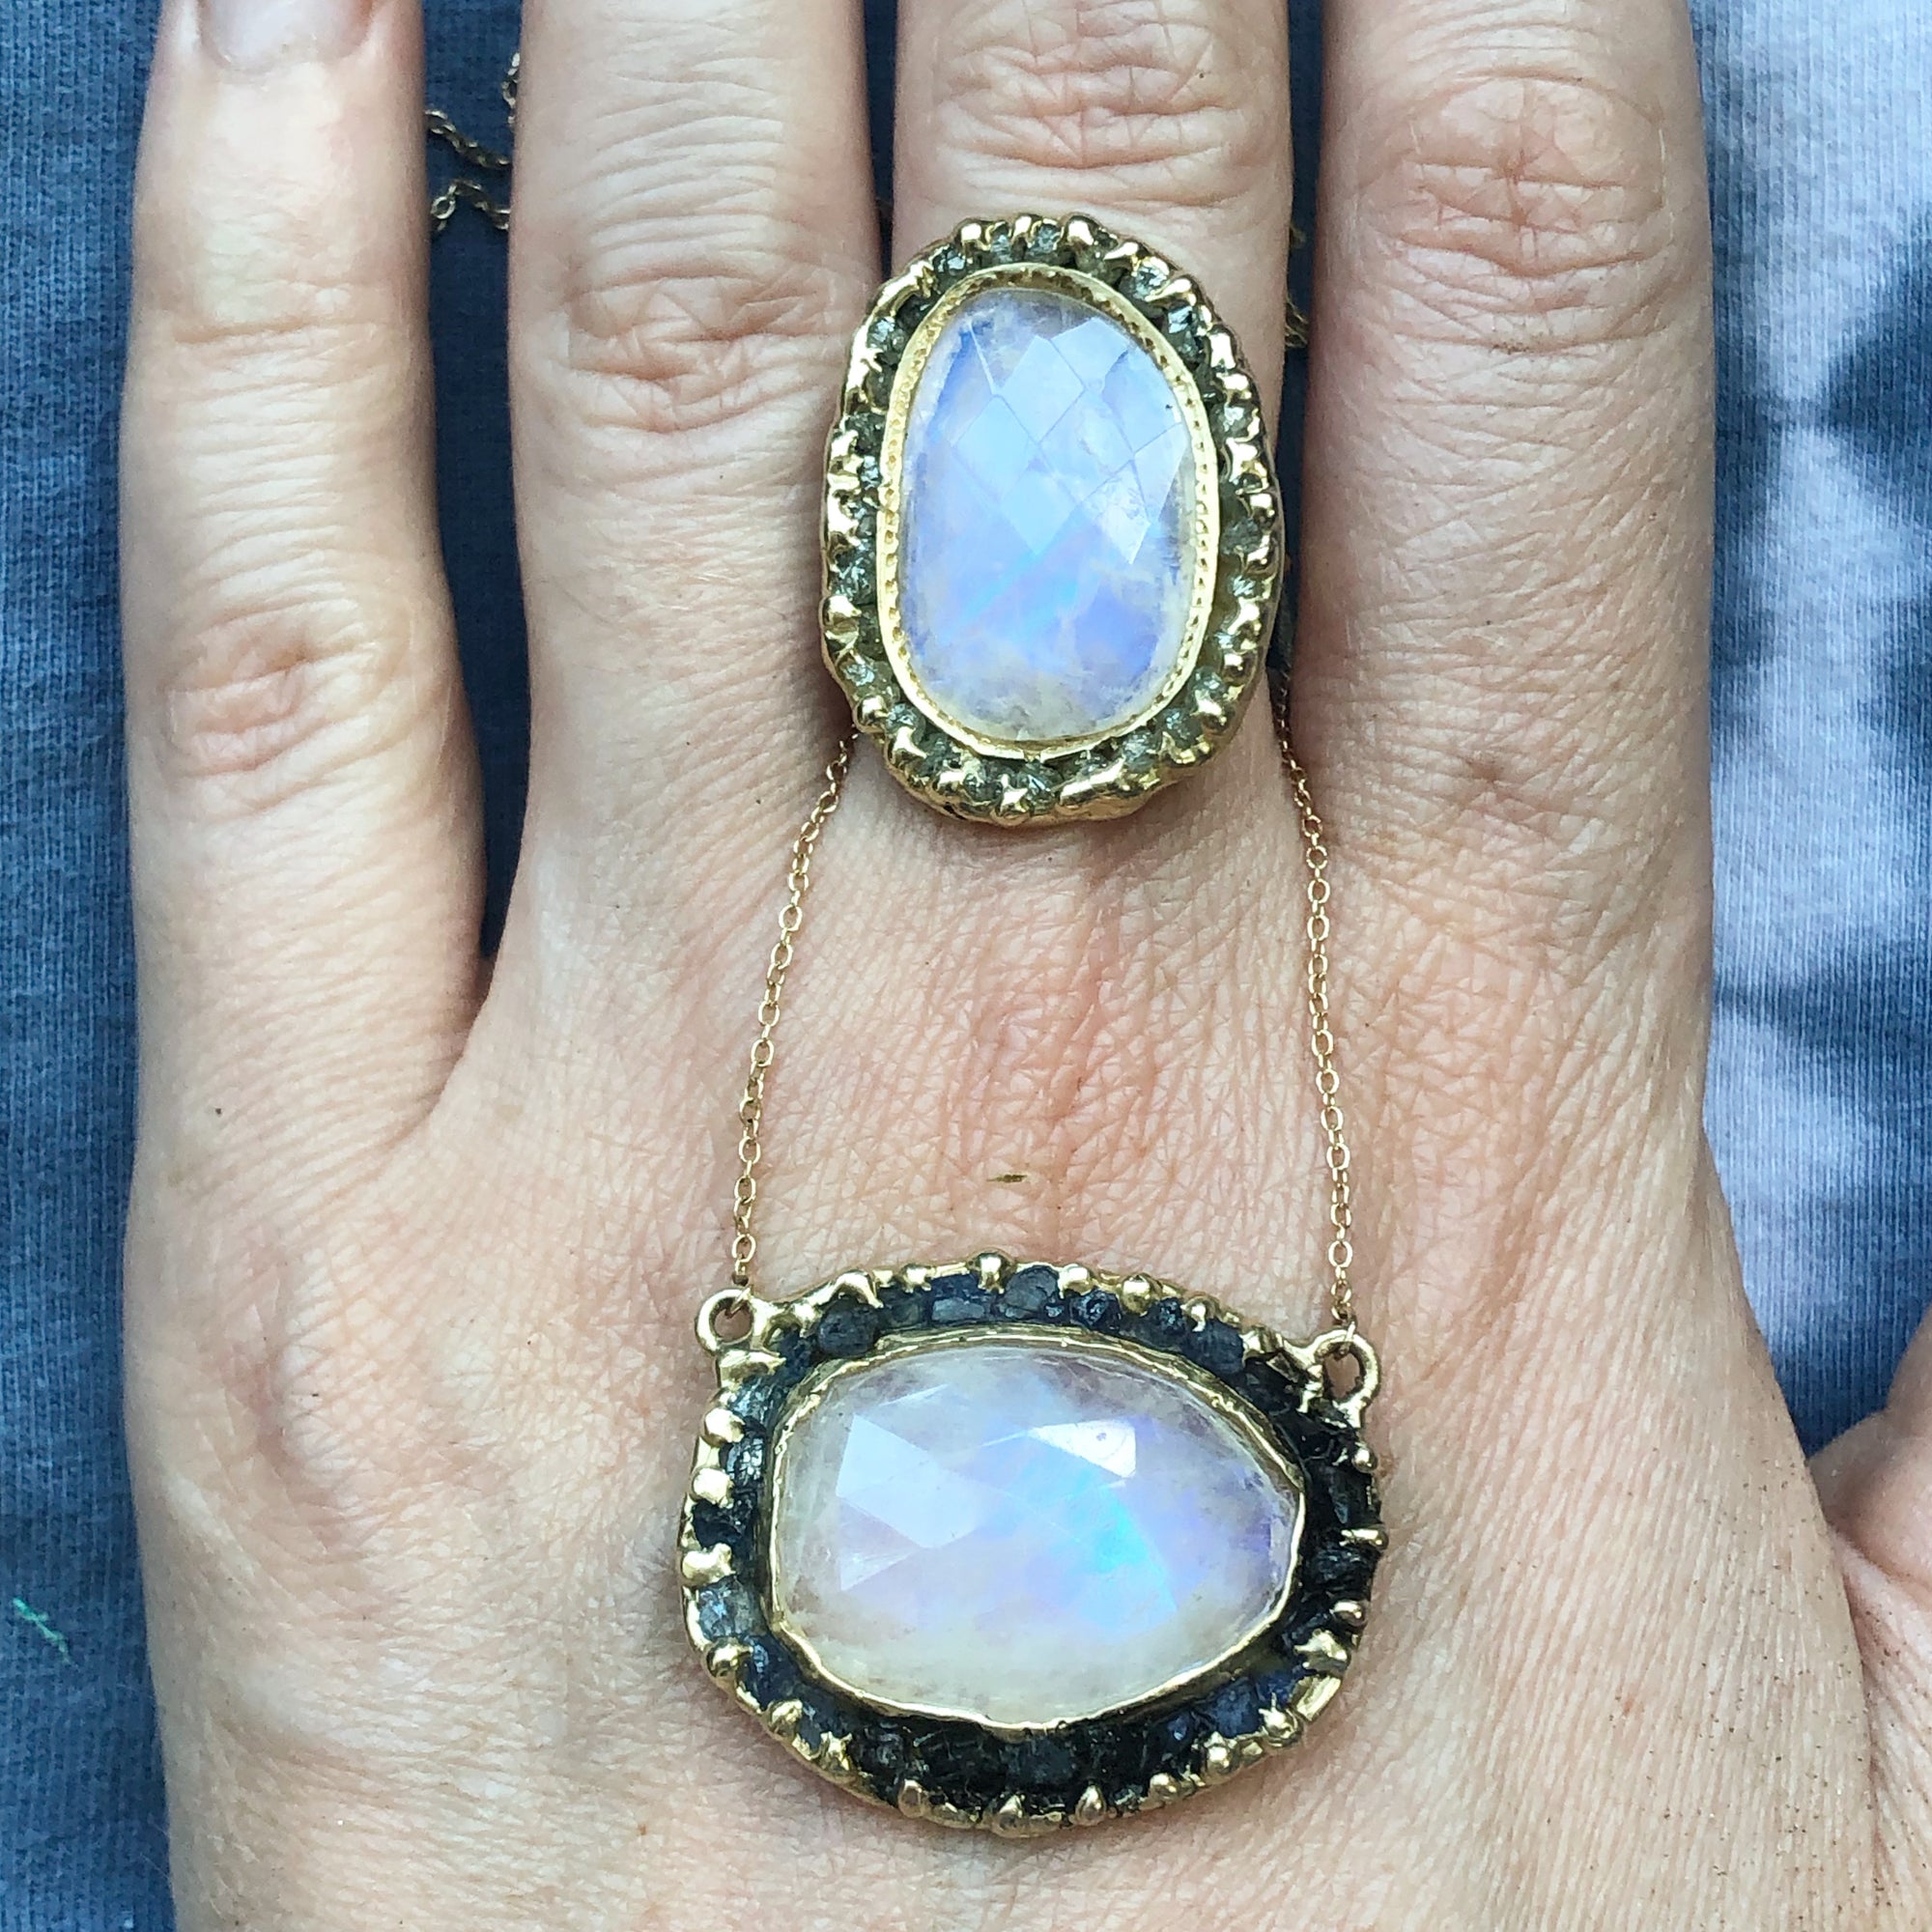 June Birthstones: Moonstone & Pearls